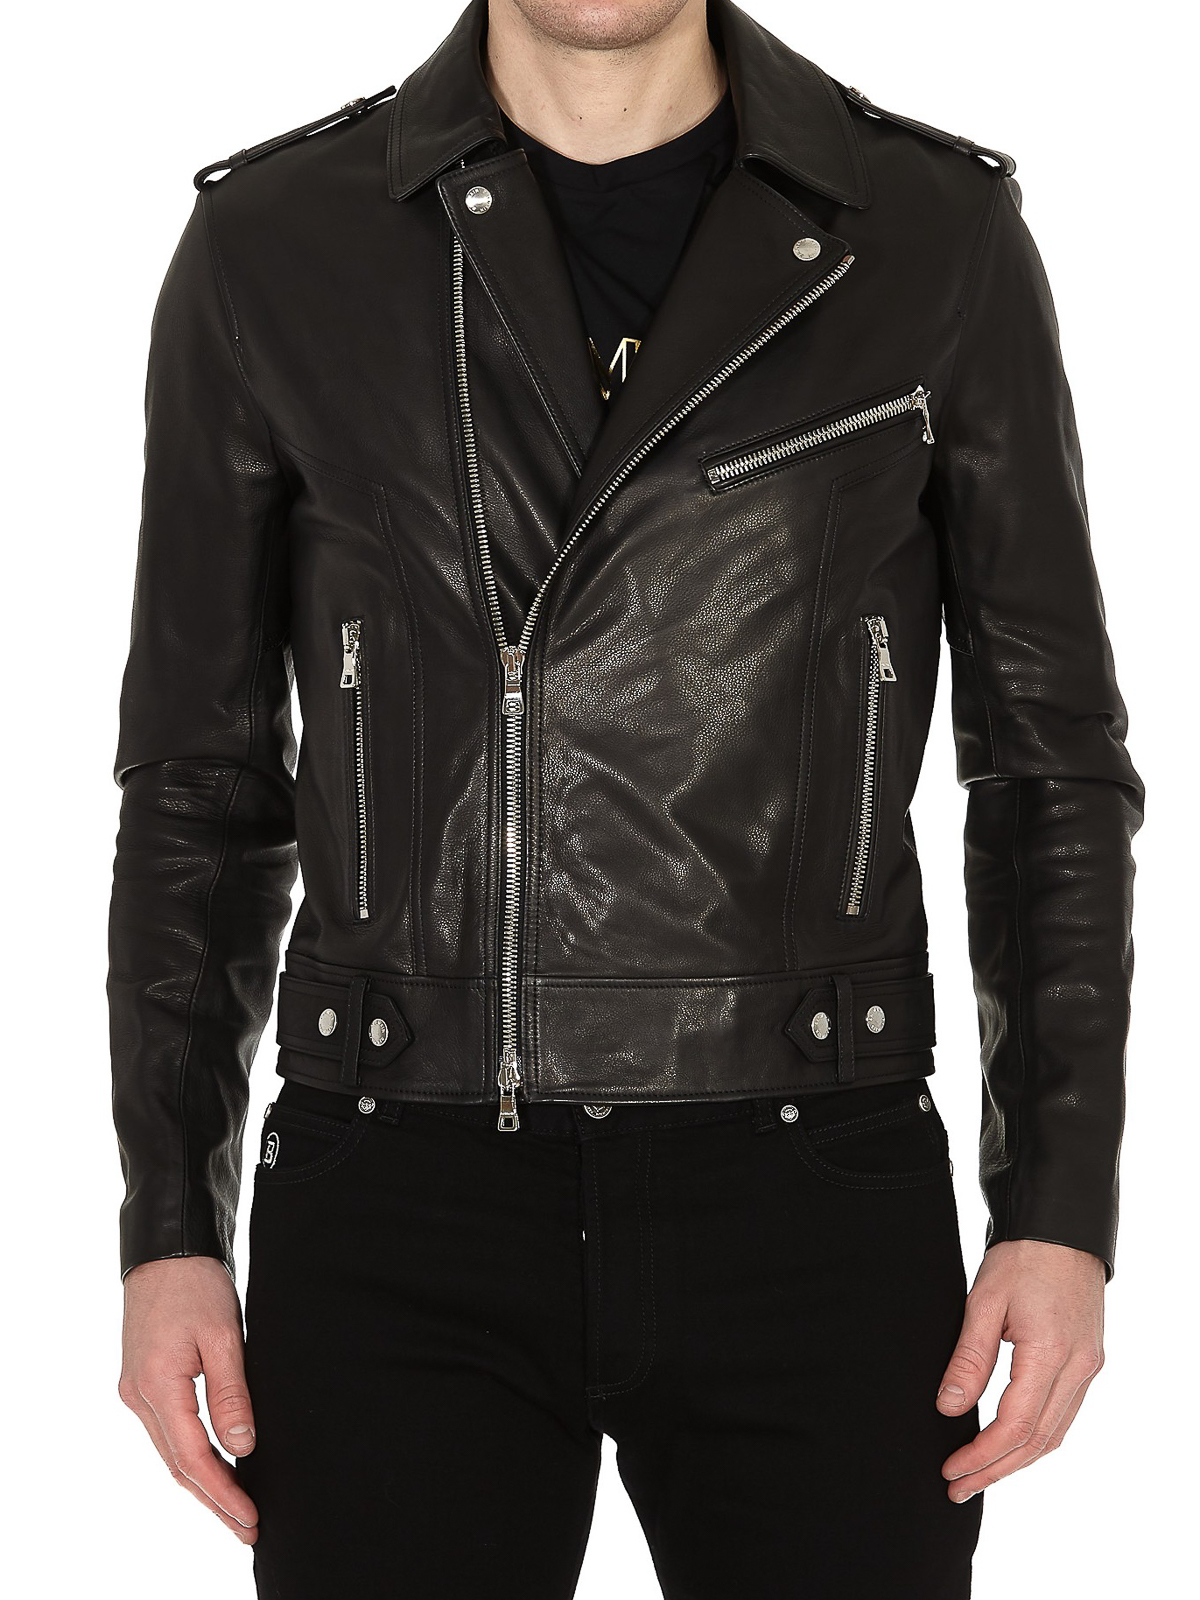 platform Fremtrædende sand Leather jacket Balmain - Balmain Paris print leather jacket - TH18508L0650PA